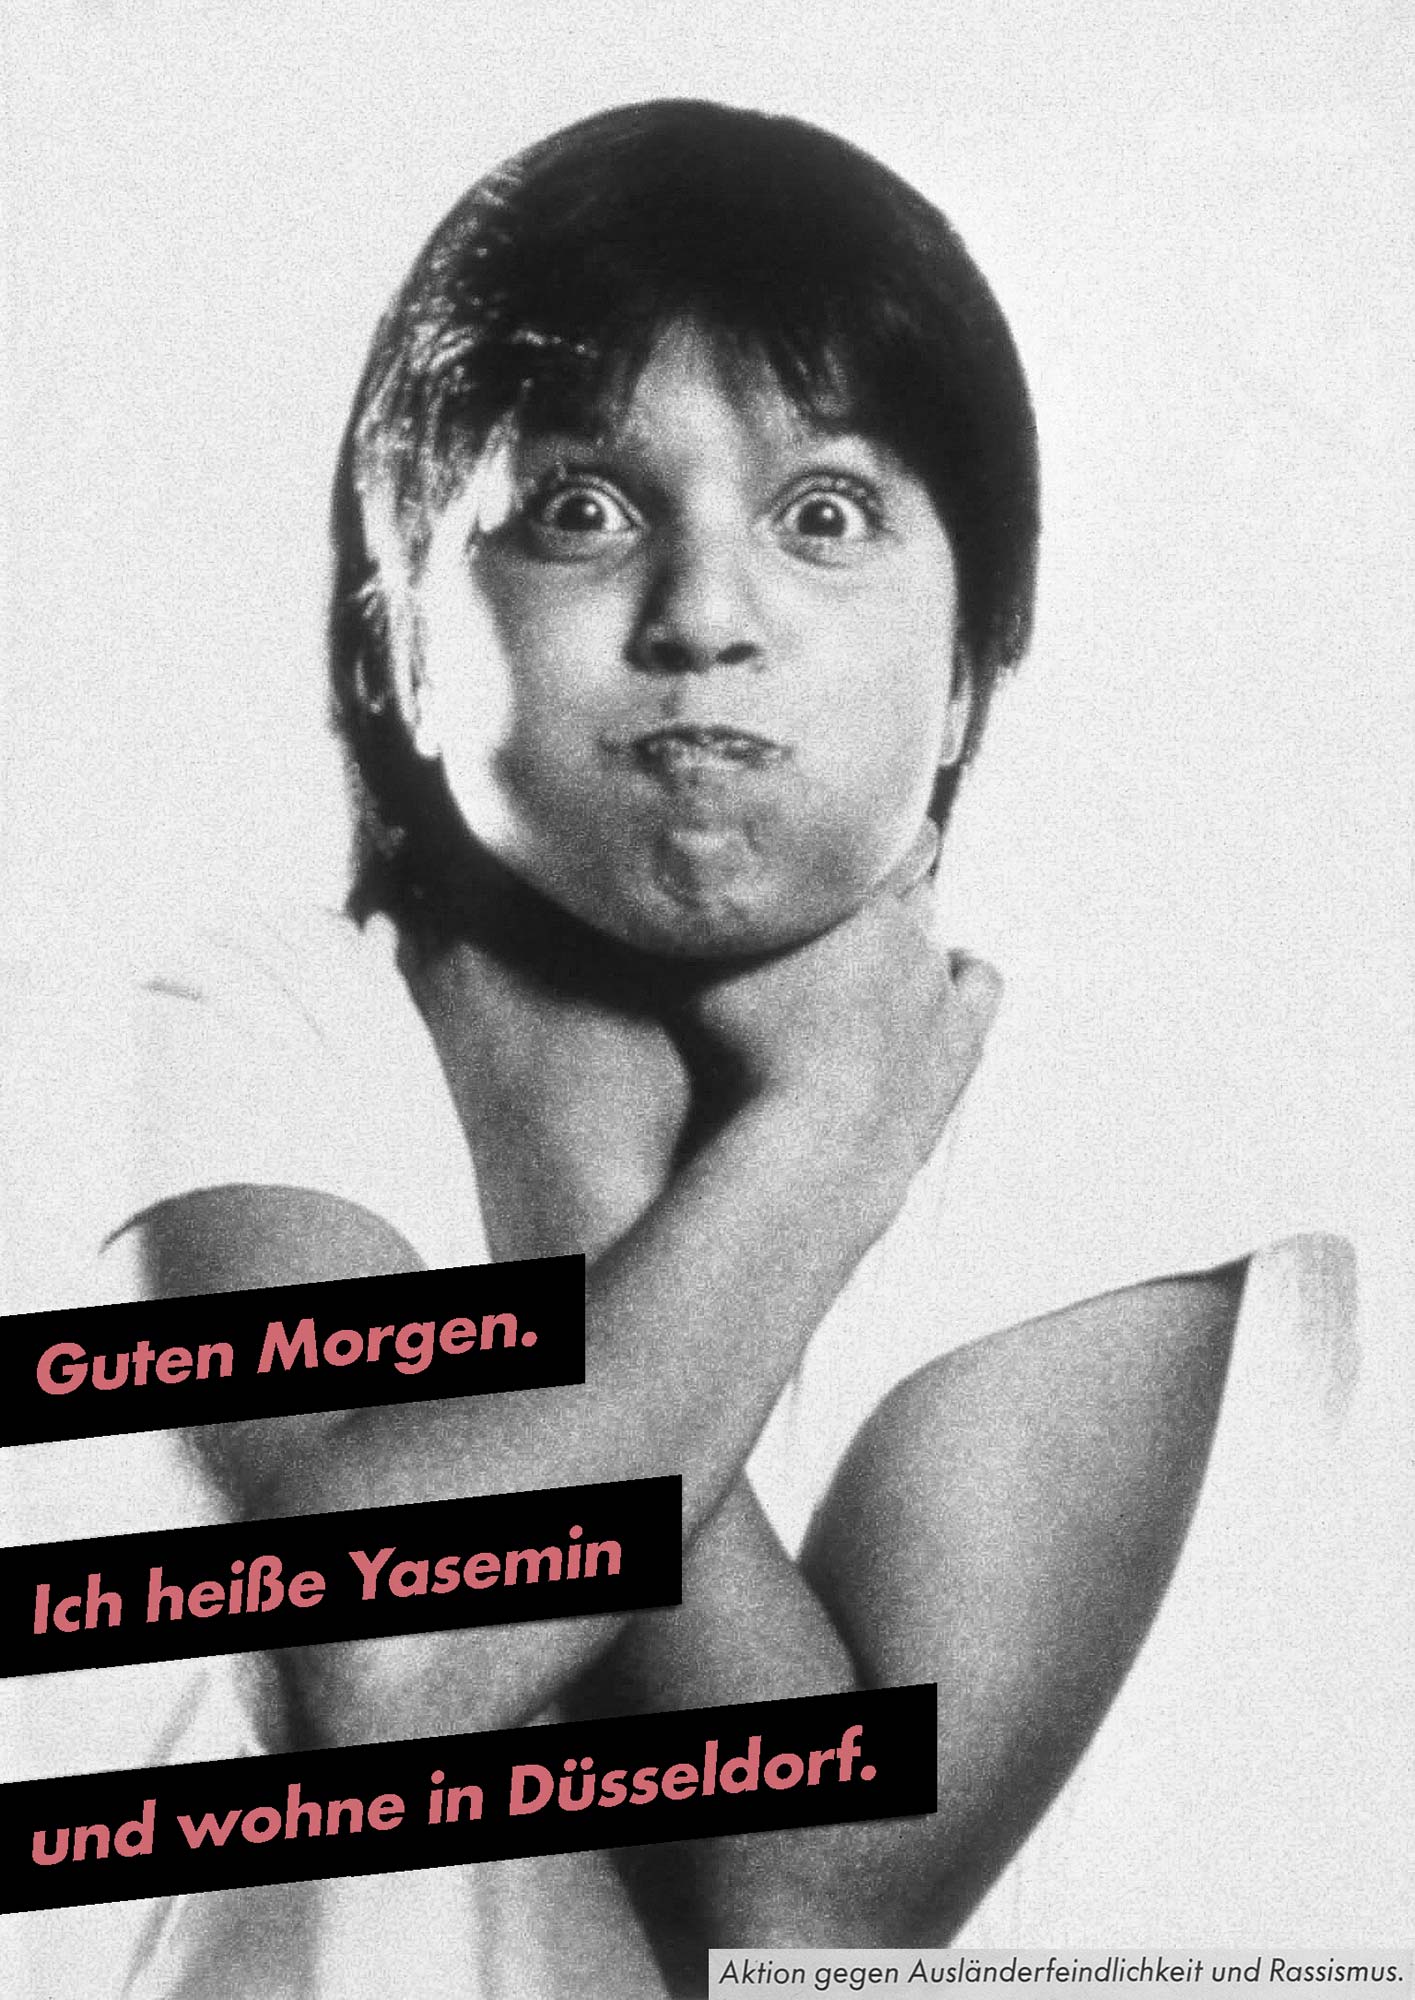 Gestaltet: Eva Cervinka, Udo Bechmann, Betreut: Uwe Loesch, Titel: Guten Morgen. Ich heiße Yasemin und wohne in Düsseldorf., Jahr: 1989